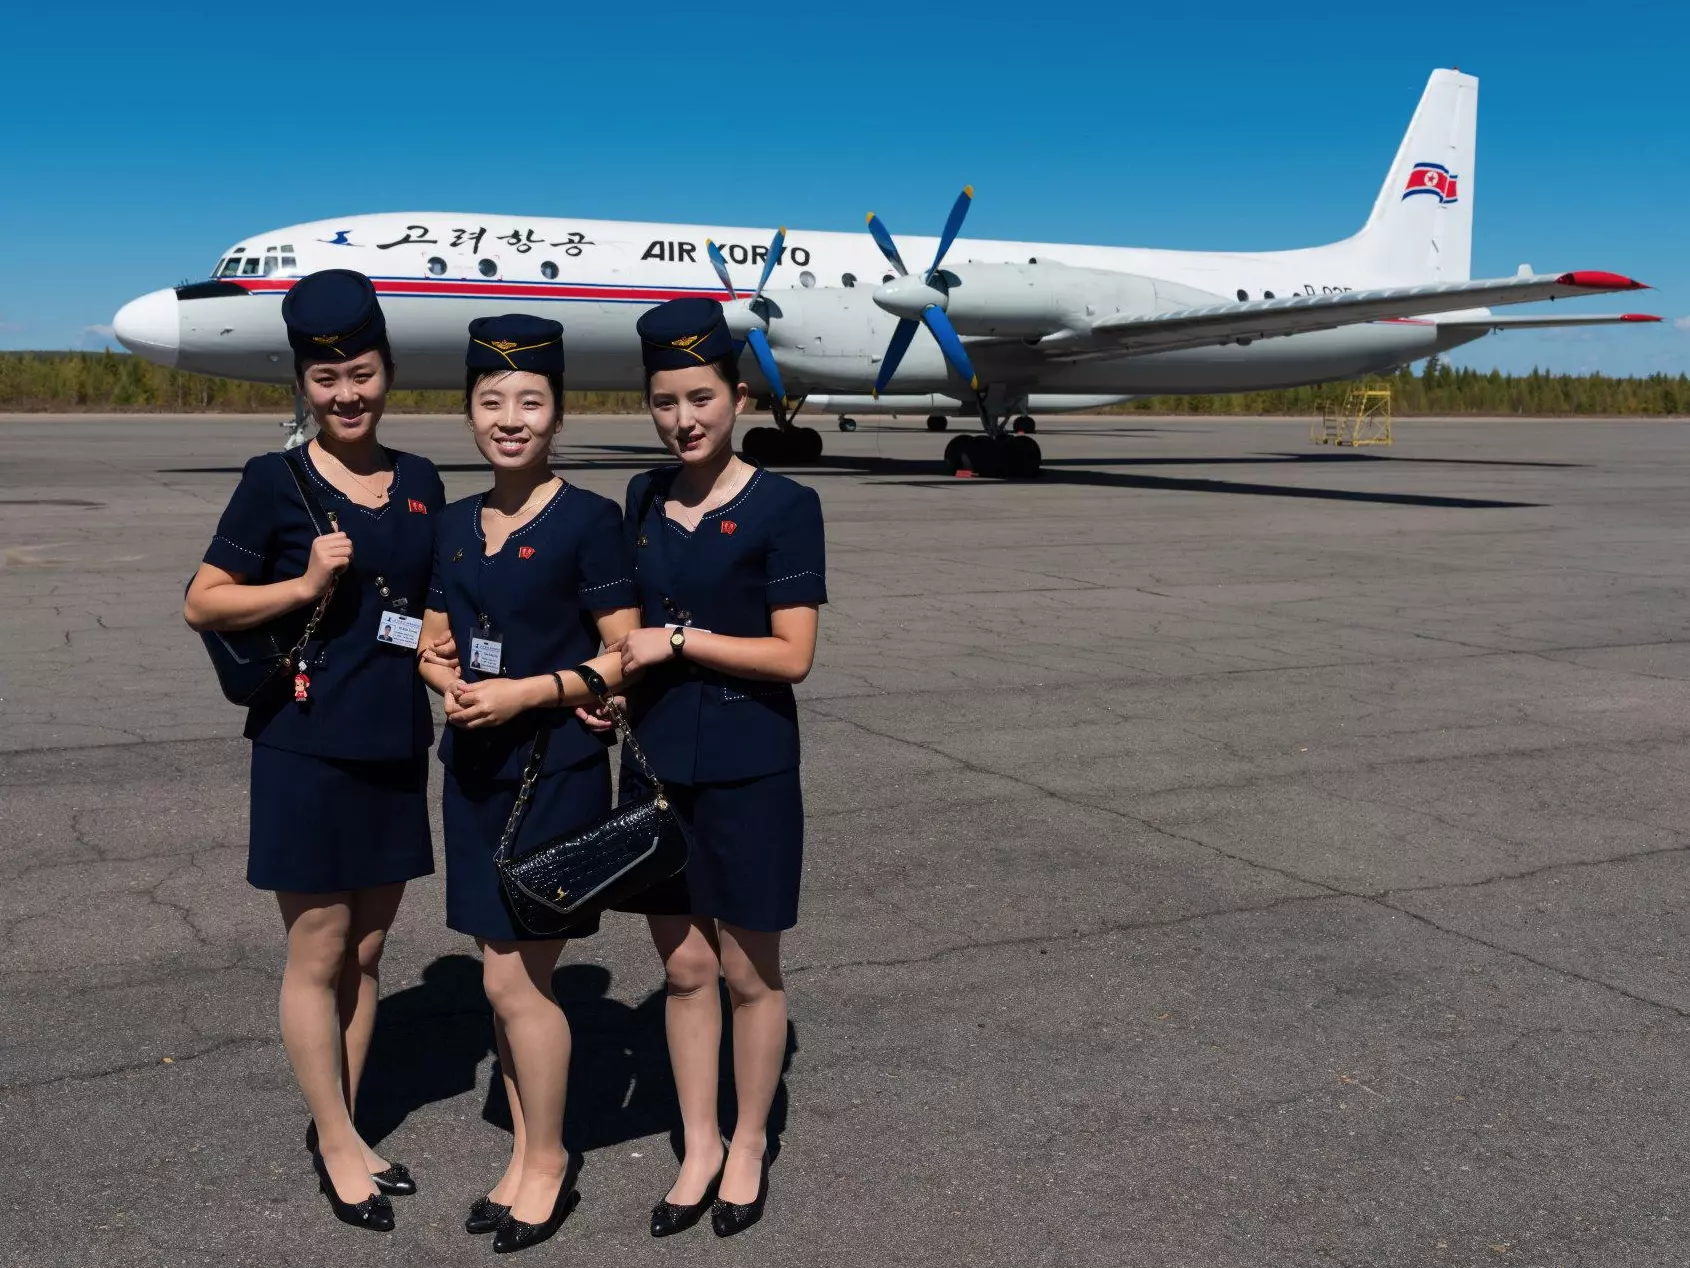 Кореан эйр официальный сайт на русском, авиакомпания korean air - корейские авиалинии